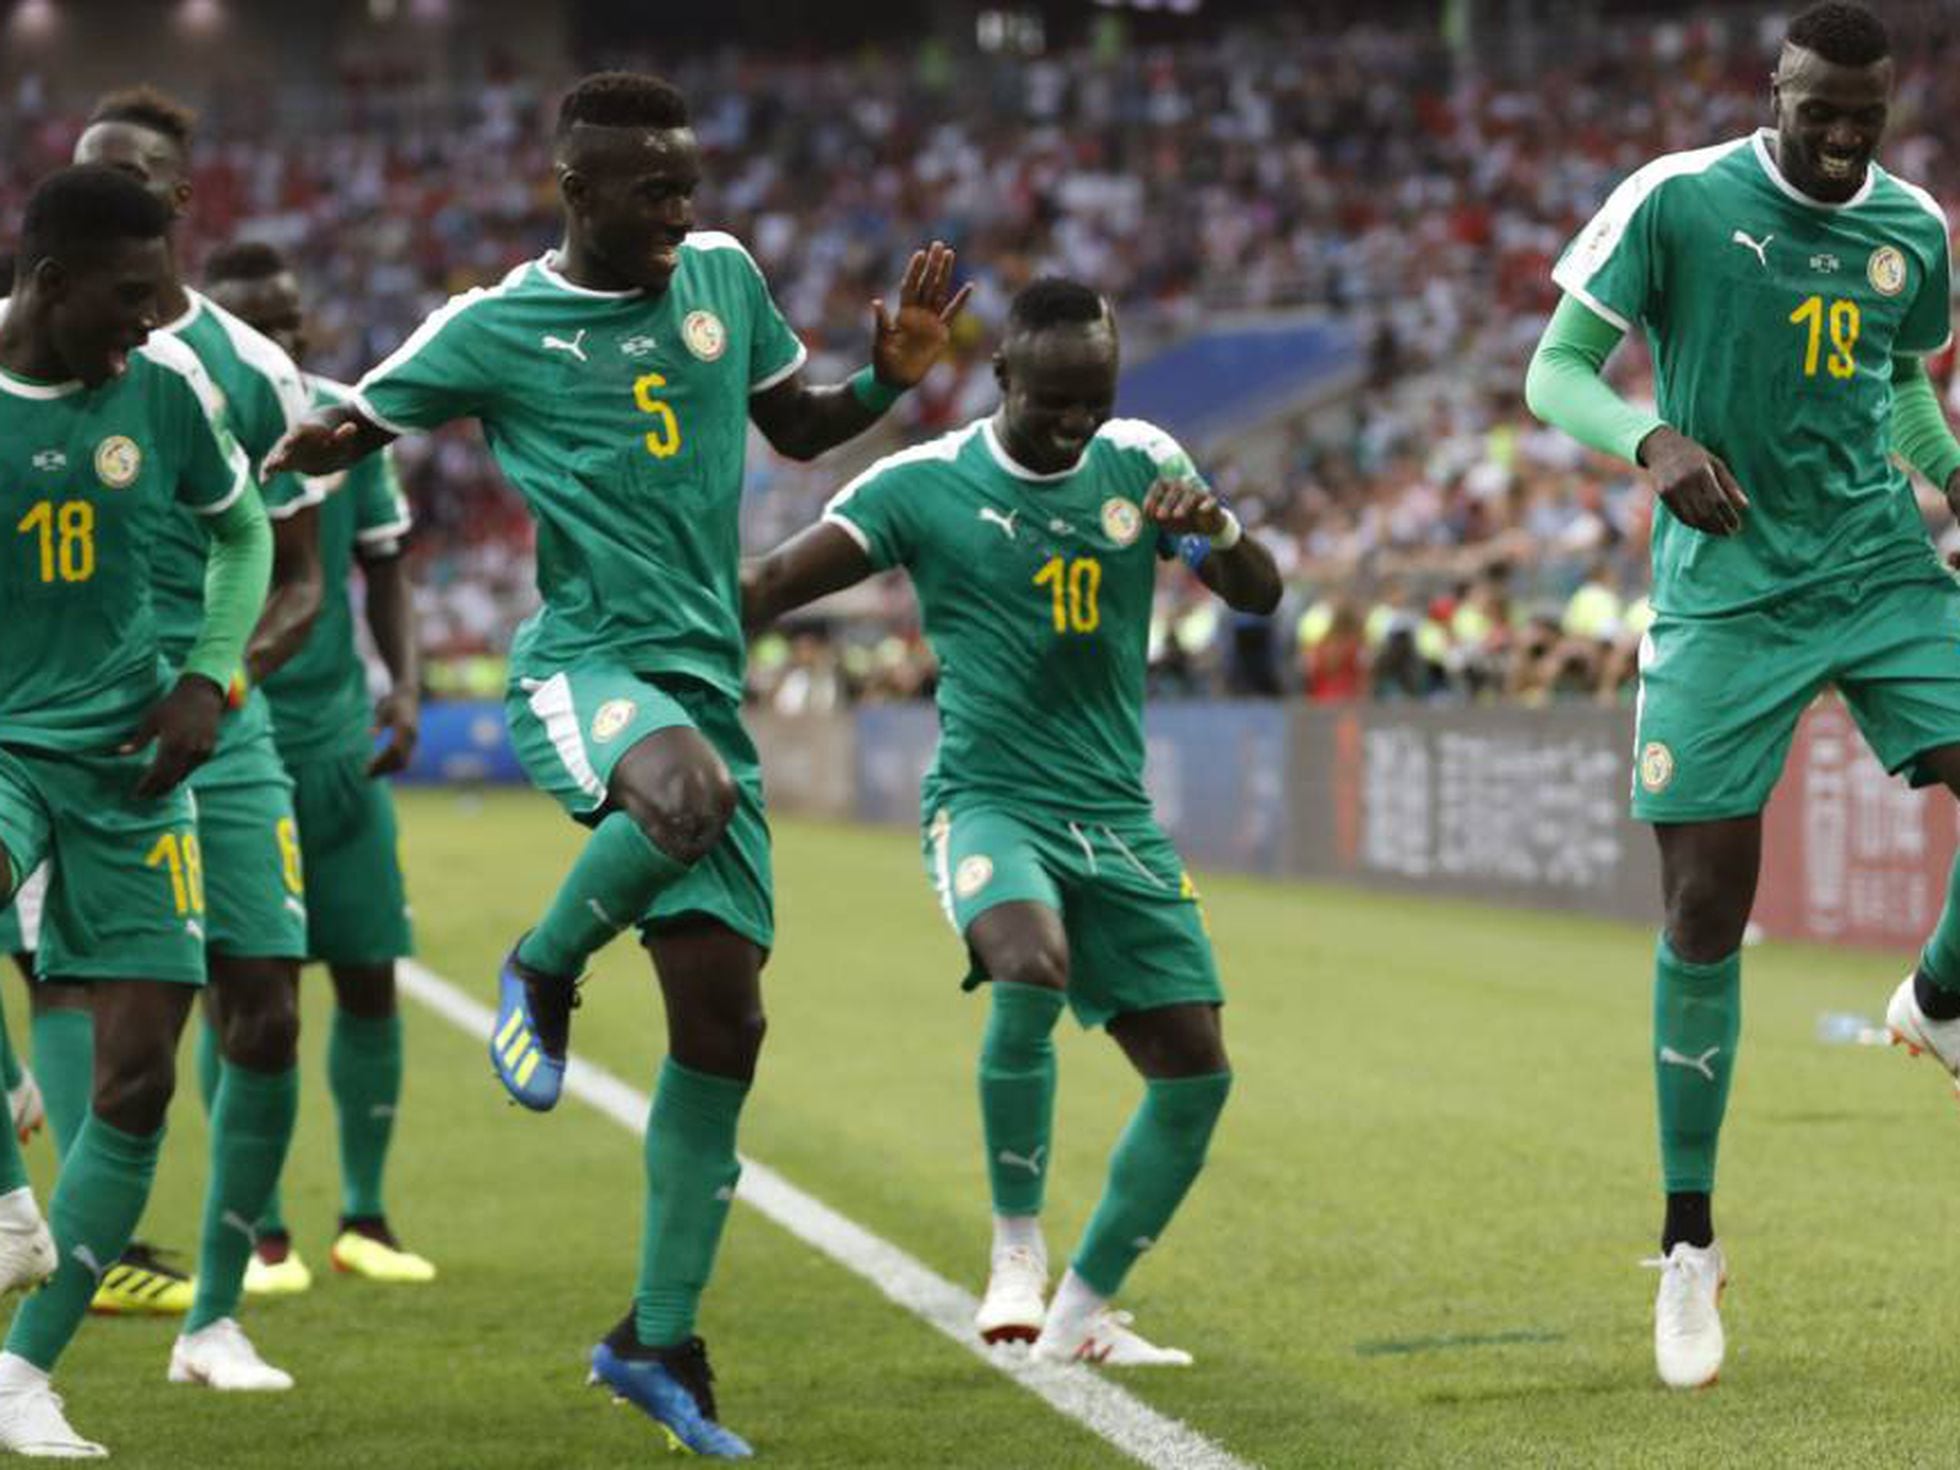 COPA 2018: Quais são os atletas convocados por Senegal para o Mundial?